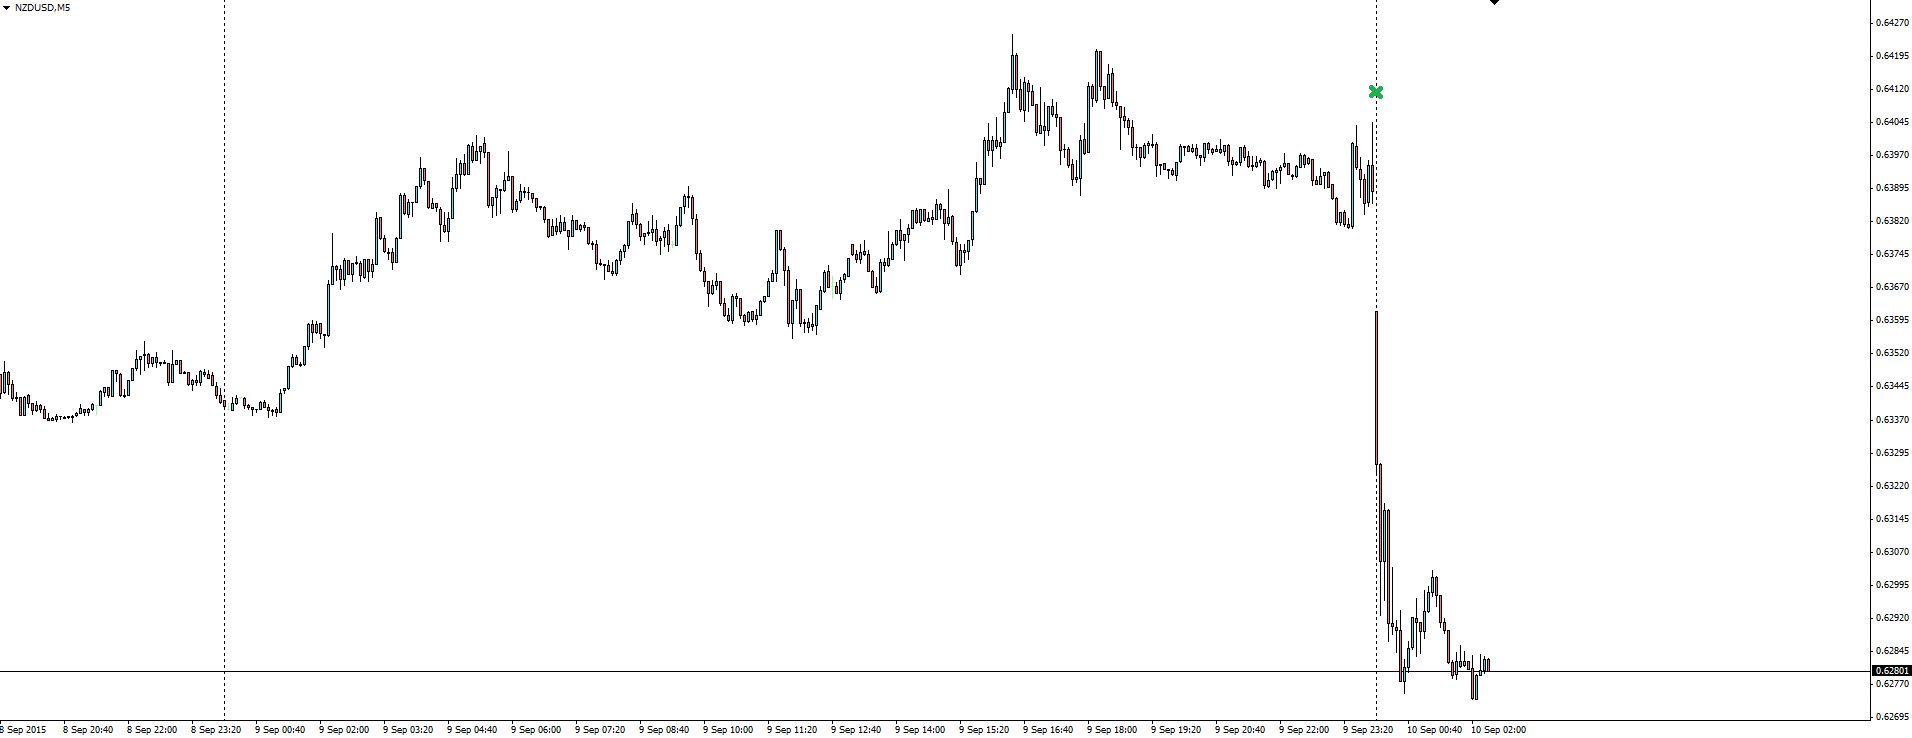 NZD/USD 5 Minute Chart